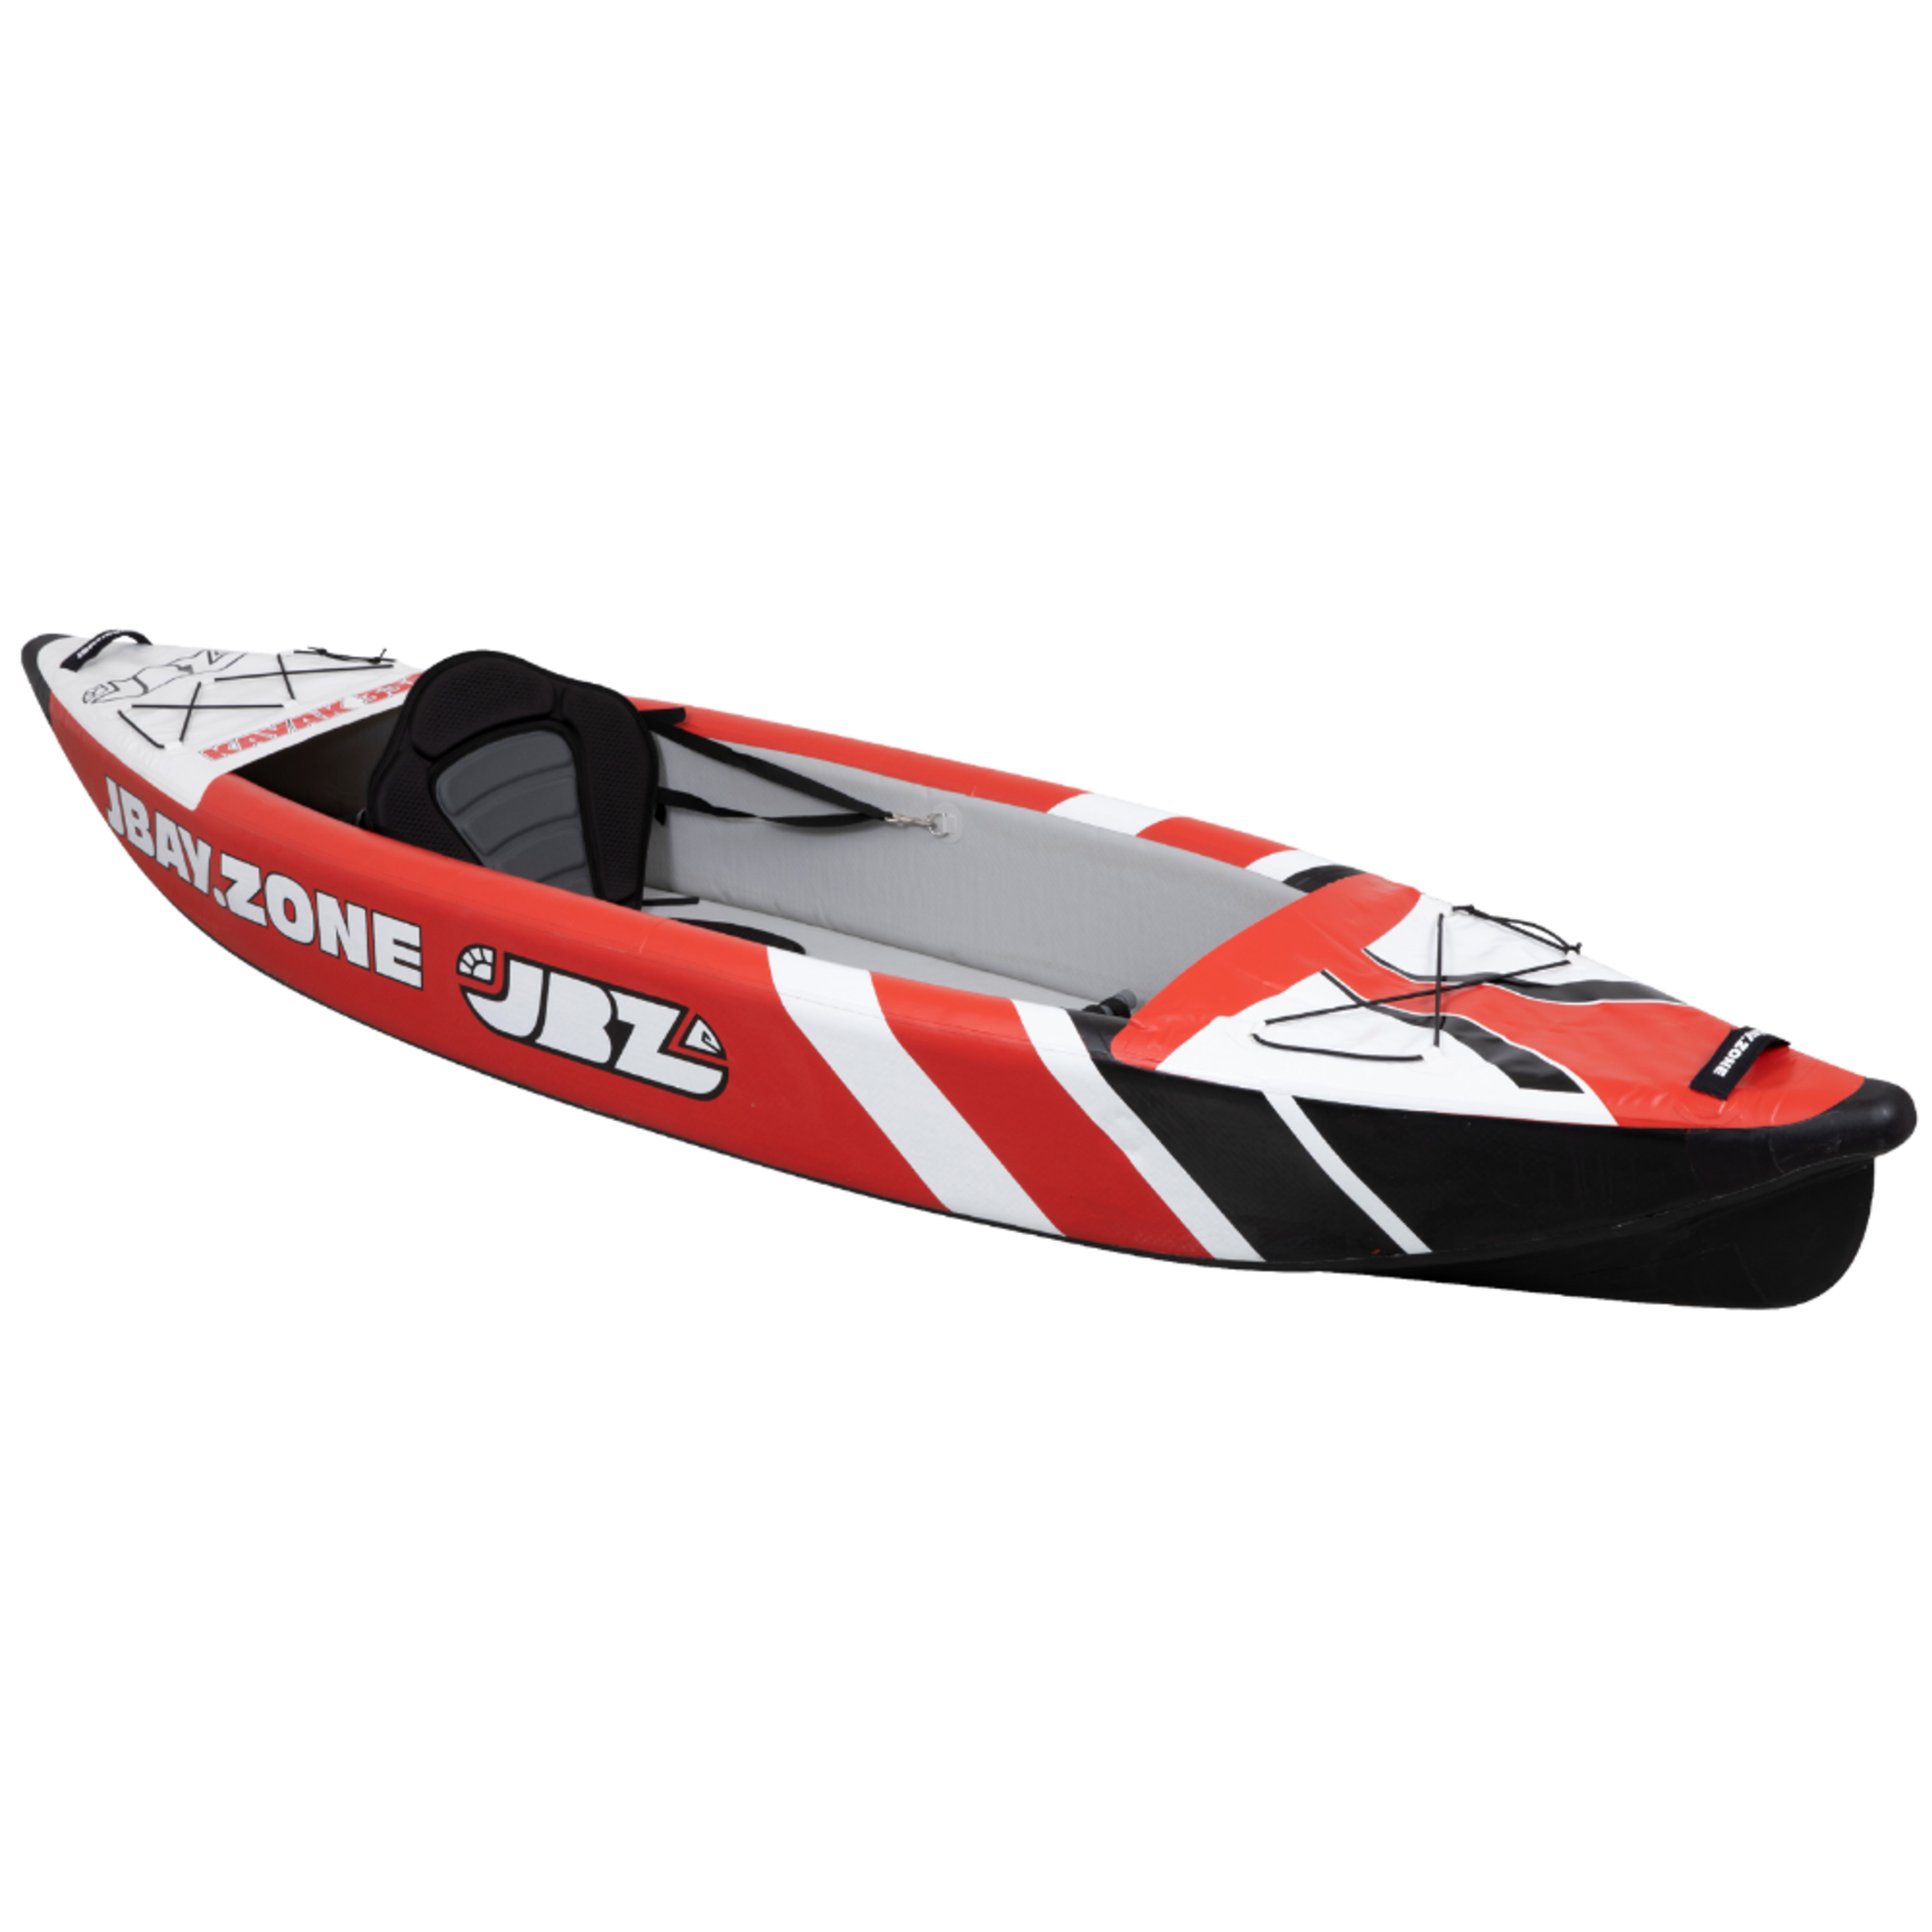 Kayak Hinchable 1 Plaza Jbay.zone 330 De 330x78cm Enteramente En Drop-stitch De Alta Presión - blanco-multicolor - 